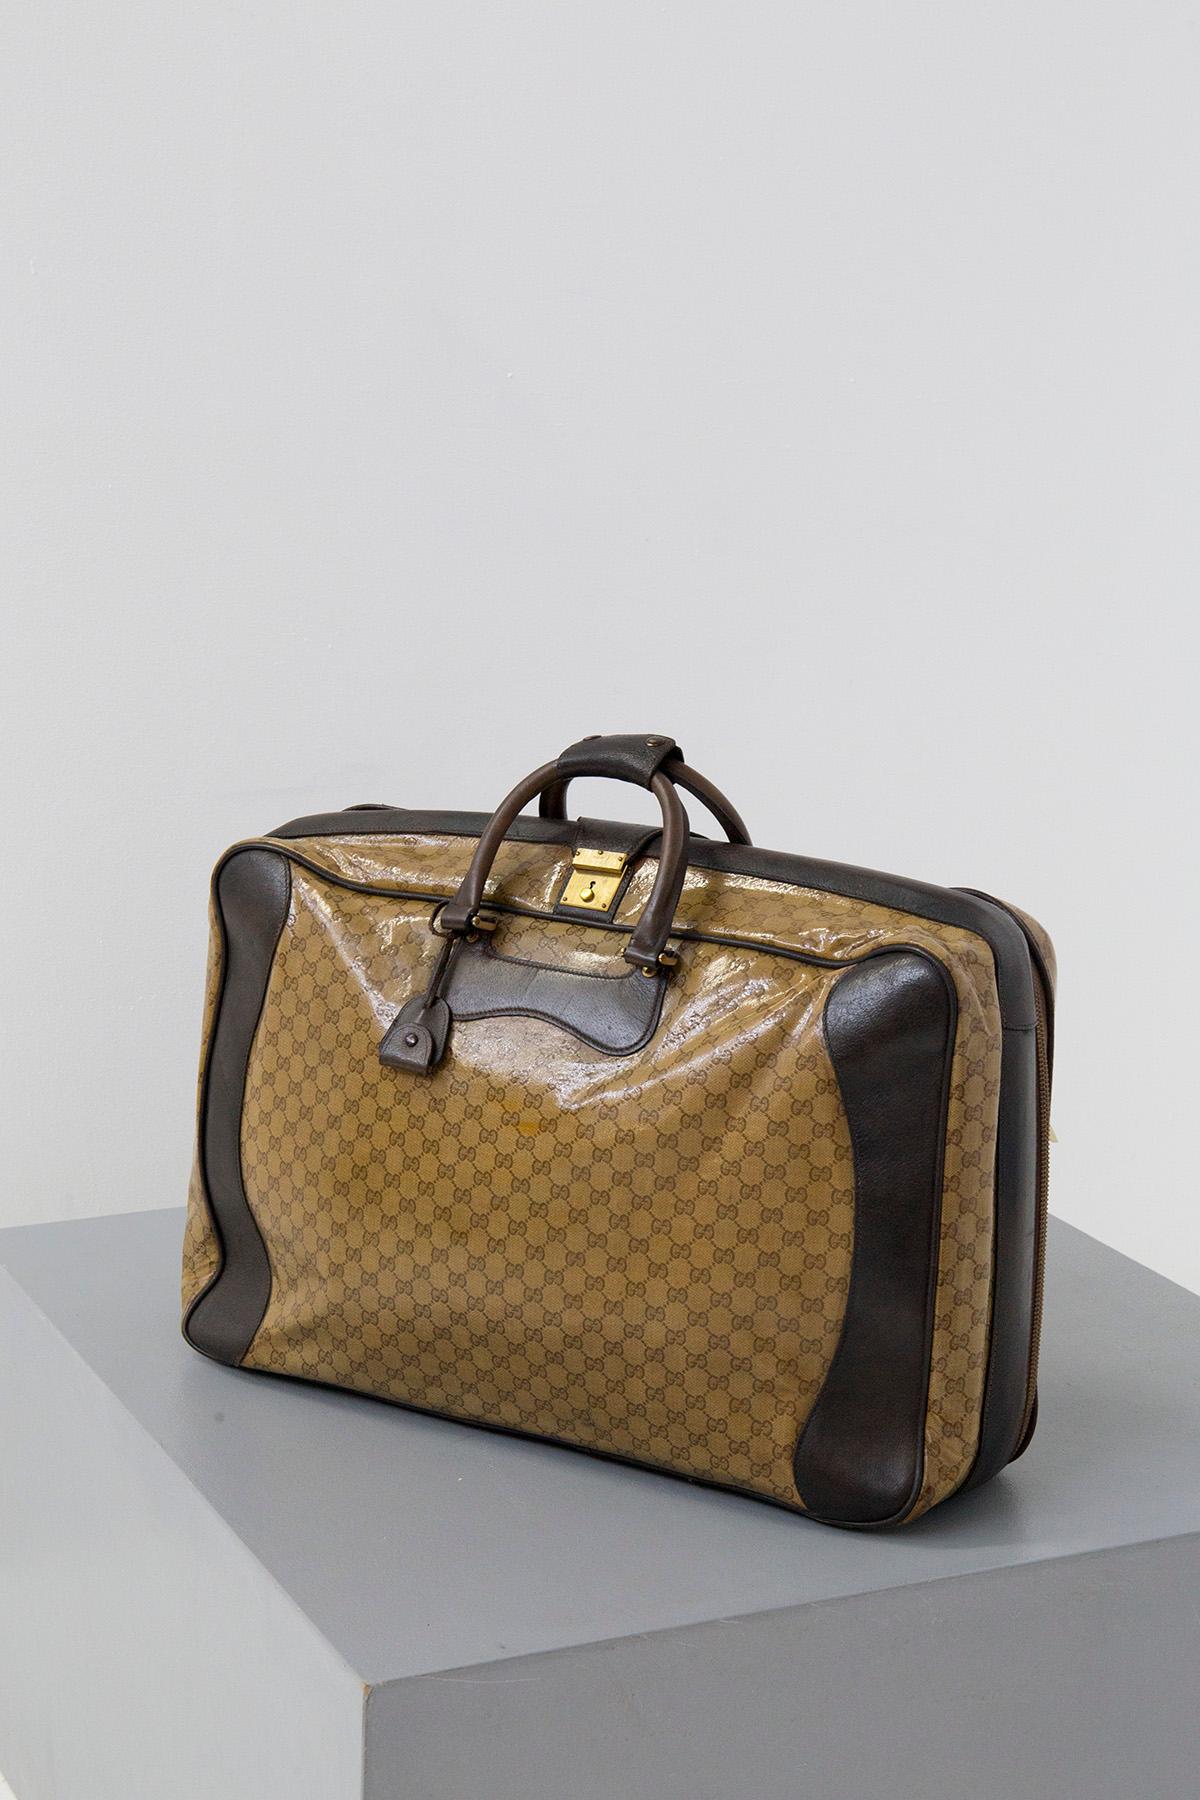 Élégant sac de voyage signé Gucci, datant des années 1970-80. Fabriqué avec du cuir brun figir. L'ensemble du sac arbore son logo original dans un cuir acétate beige très souple. On remarque deux poignées en cuir très élégantes qui permettent de